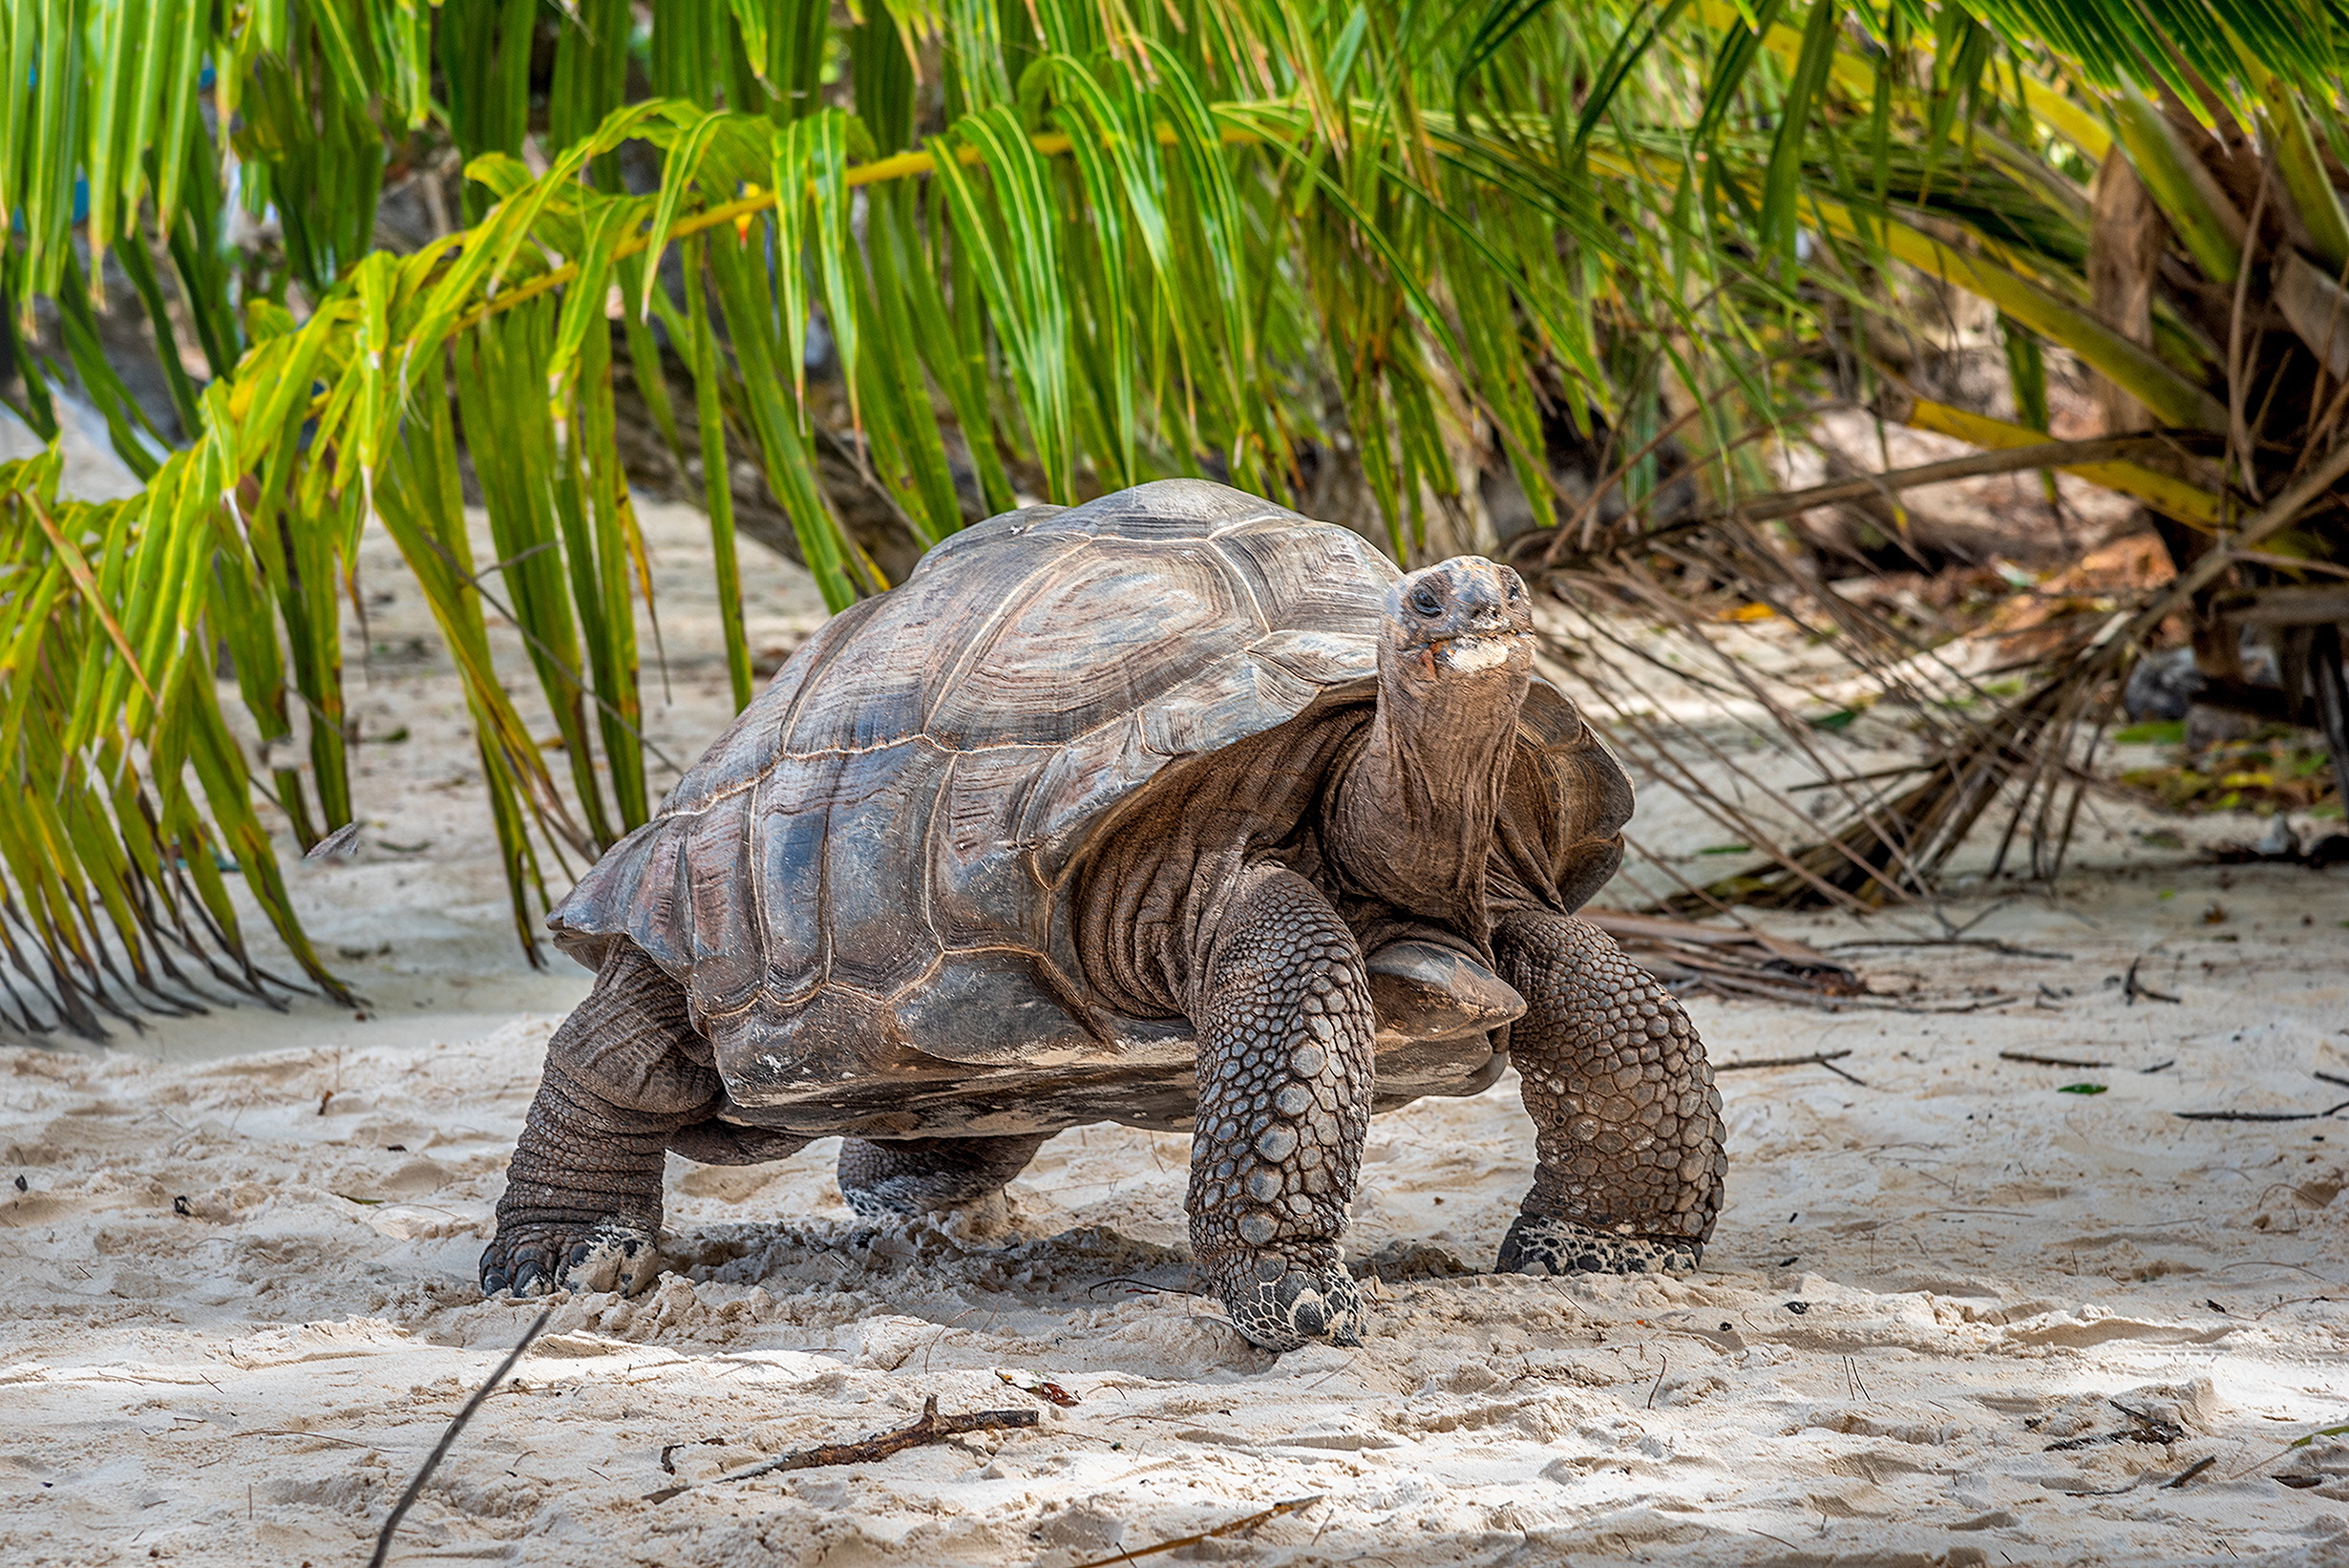 A tortoise on a beach